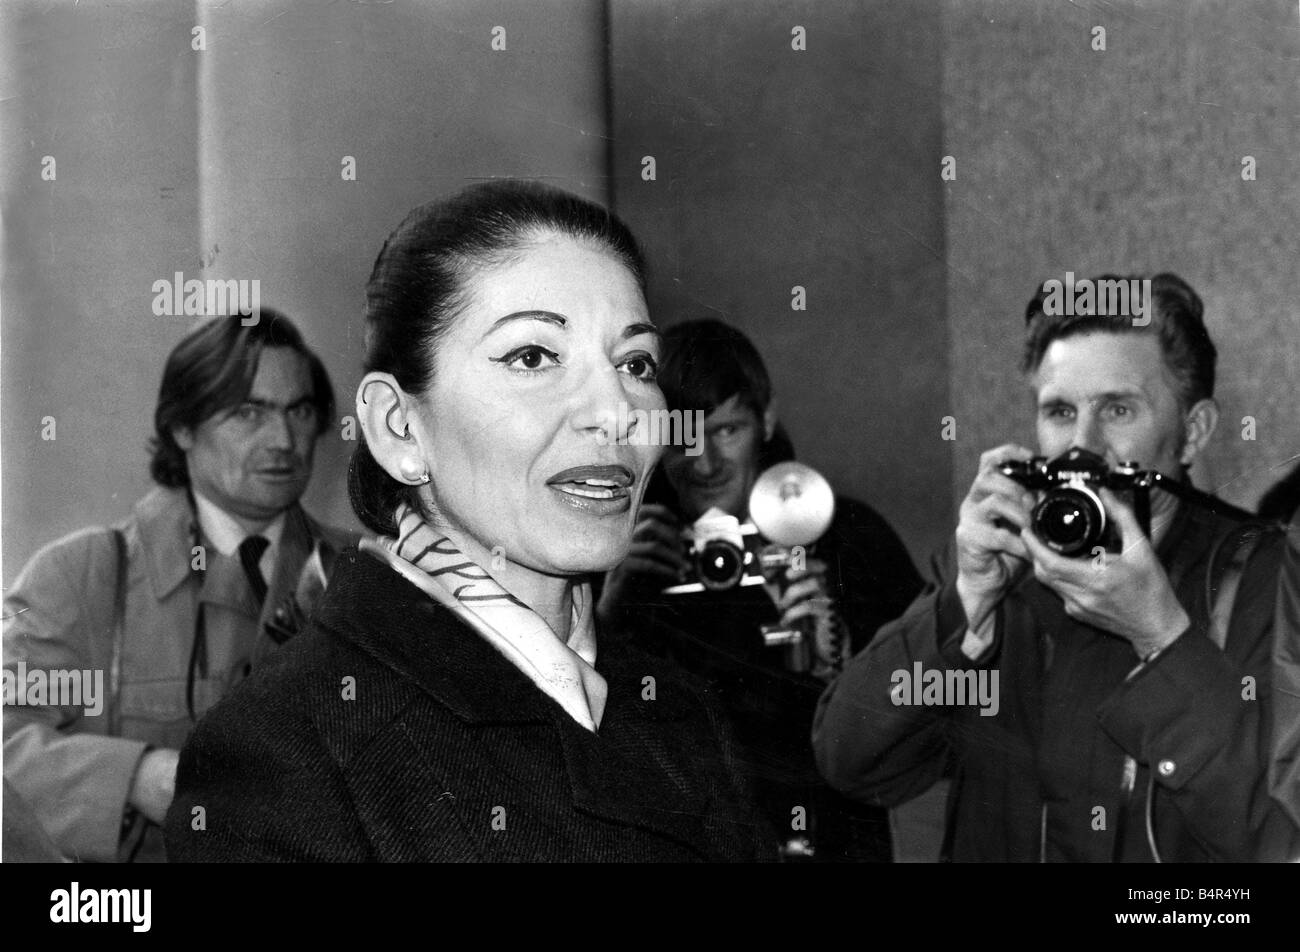 Maria Callas Maria Callas die turbulenten Sängerin aus Mailand, La Scala in der Royal Festival Hall ankommen, zu Nacht s Erwägungsgrund Wih für Proben Guiseppe Di Stefano She heute Abend und am 2. Dezember der zweiten Begründungserwägung erscheint s sein sollte, eine besonders glückliche für Callas es wird ihren 50. Geburtstag, die sie ursprünglich im Festspielhaus am 22. September, aber das gesungen haben, abgesagt wegen Augenleiden 26. November 1973 Stockfoto